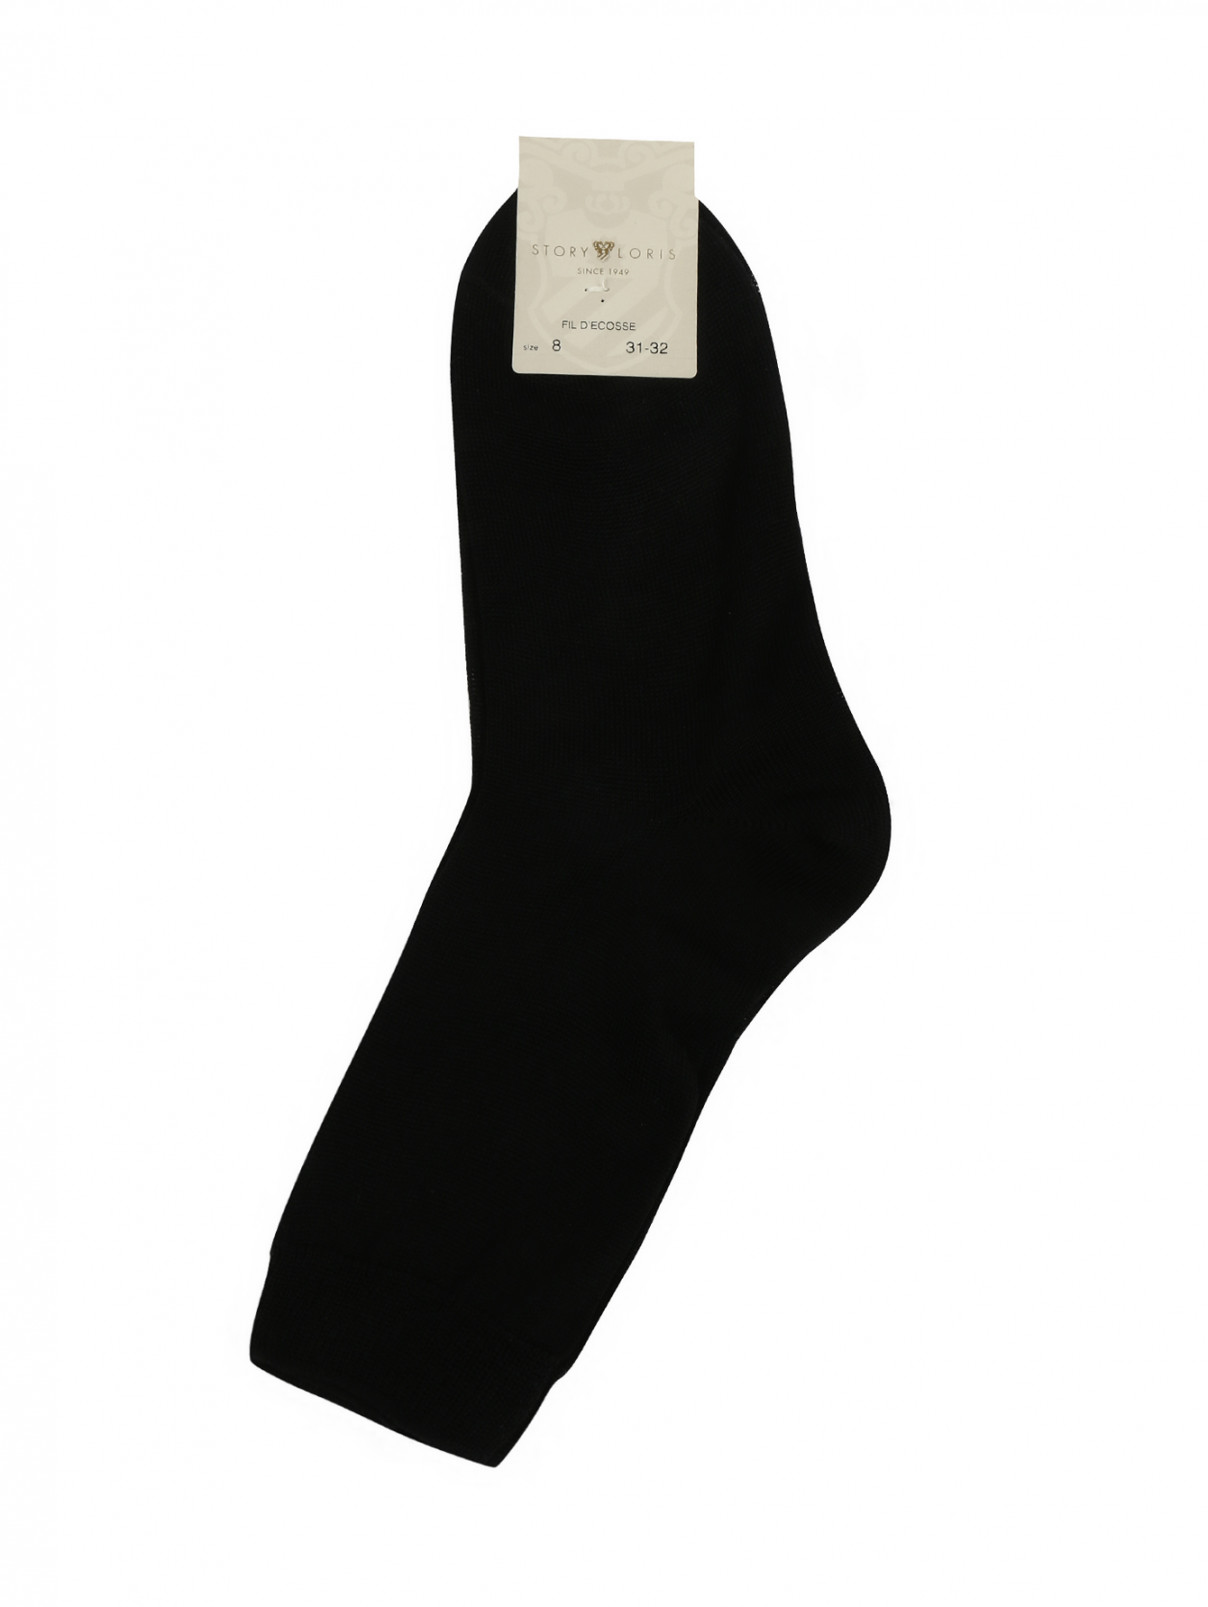 Носки из хлопка Story Loris  –  Общий вид  – Цвет:  Черный